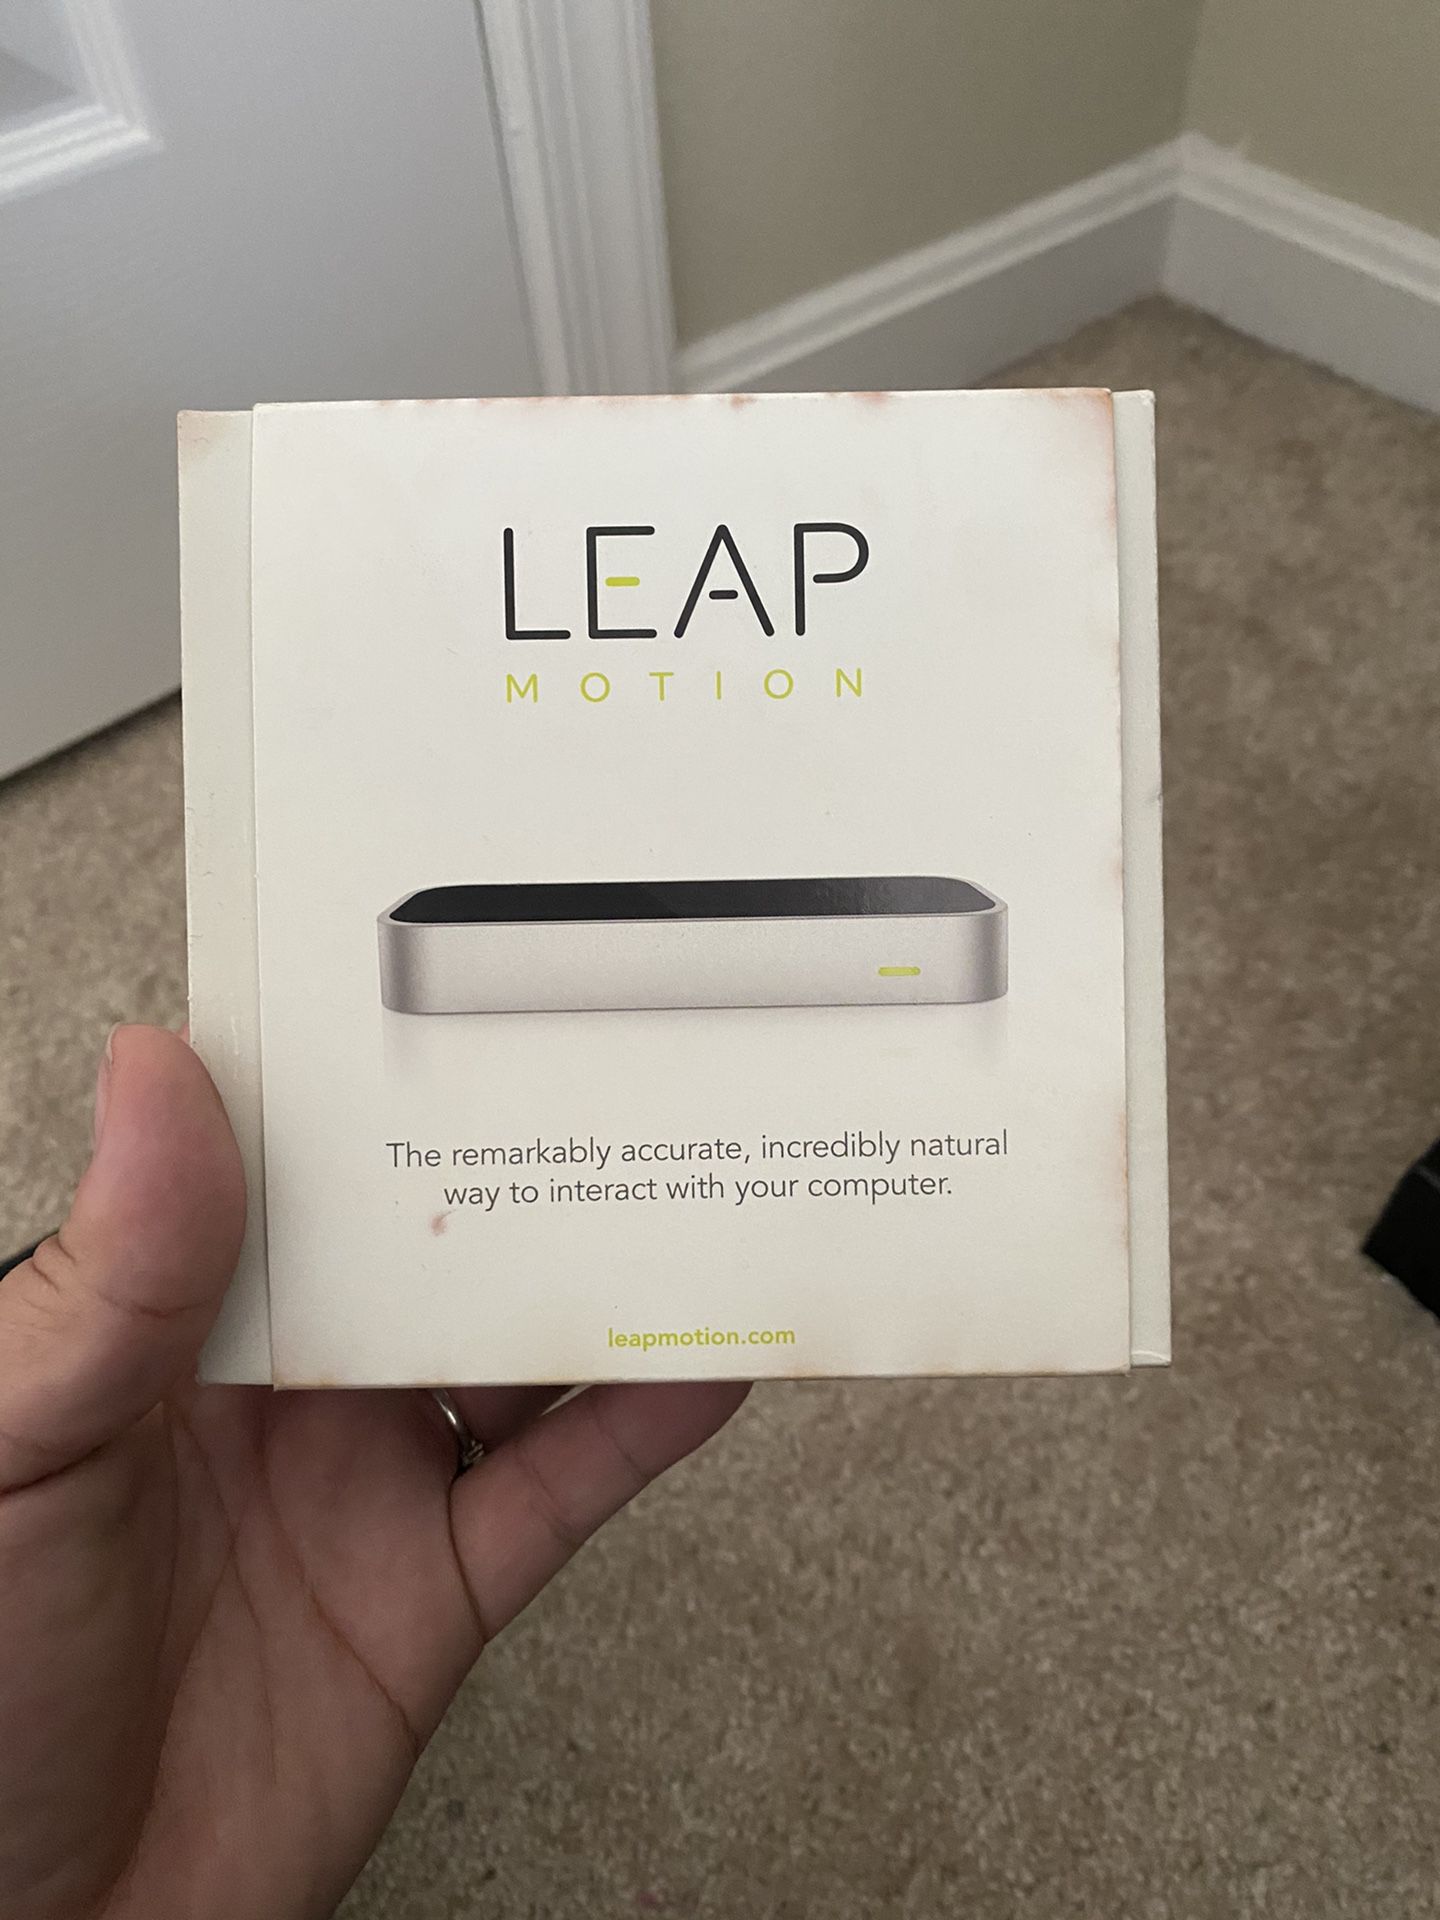 Leap motion